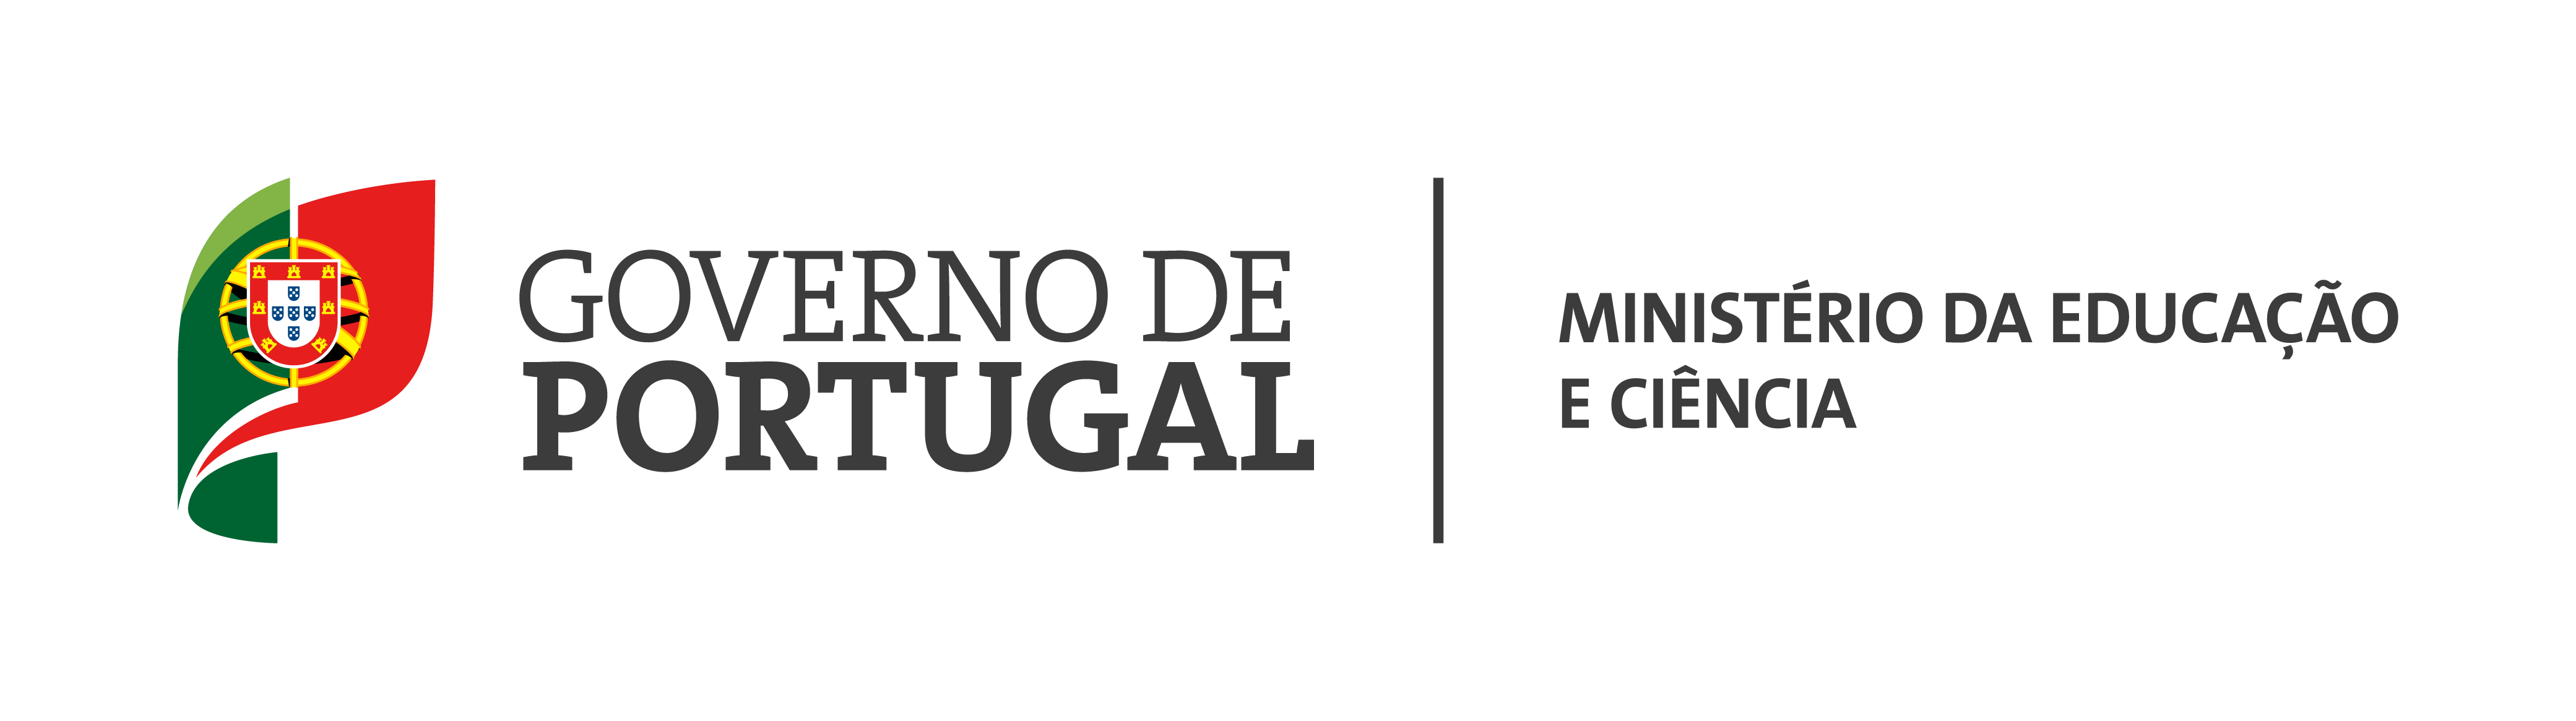 Logotipo da República Portuguesa / educação